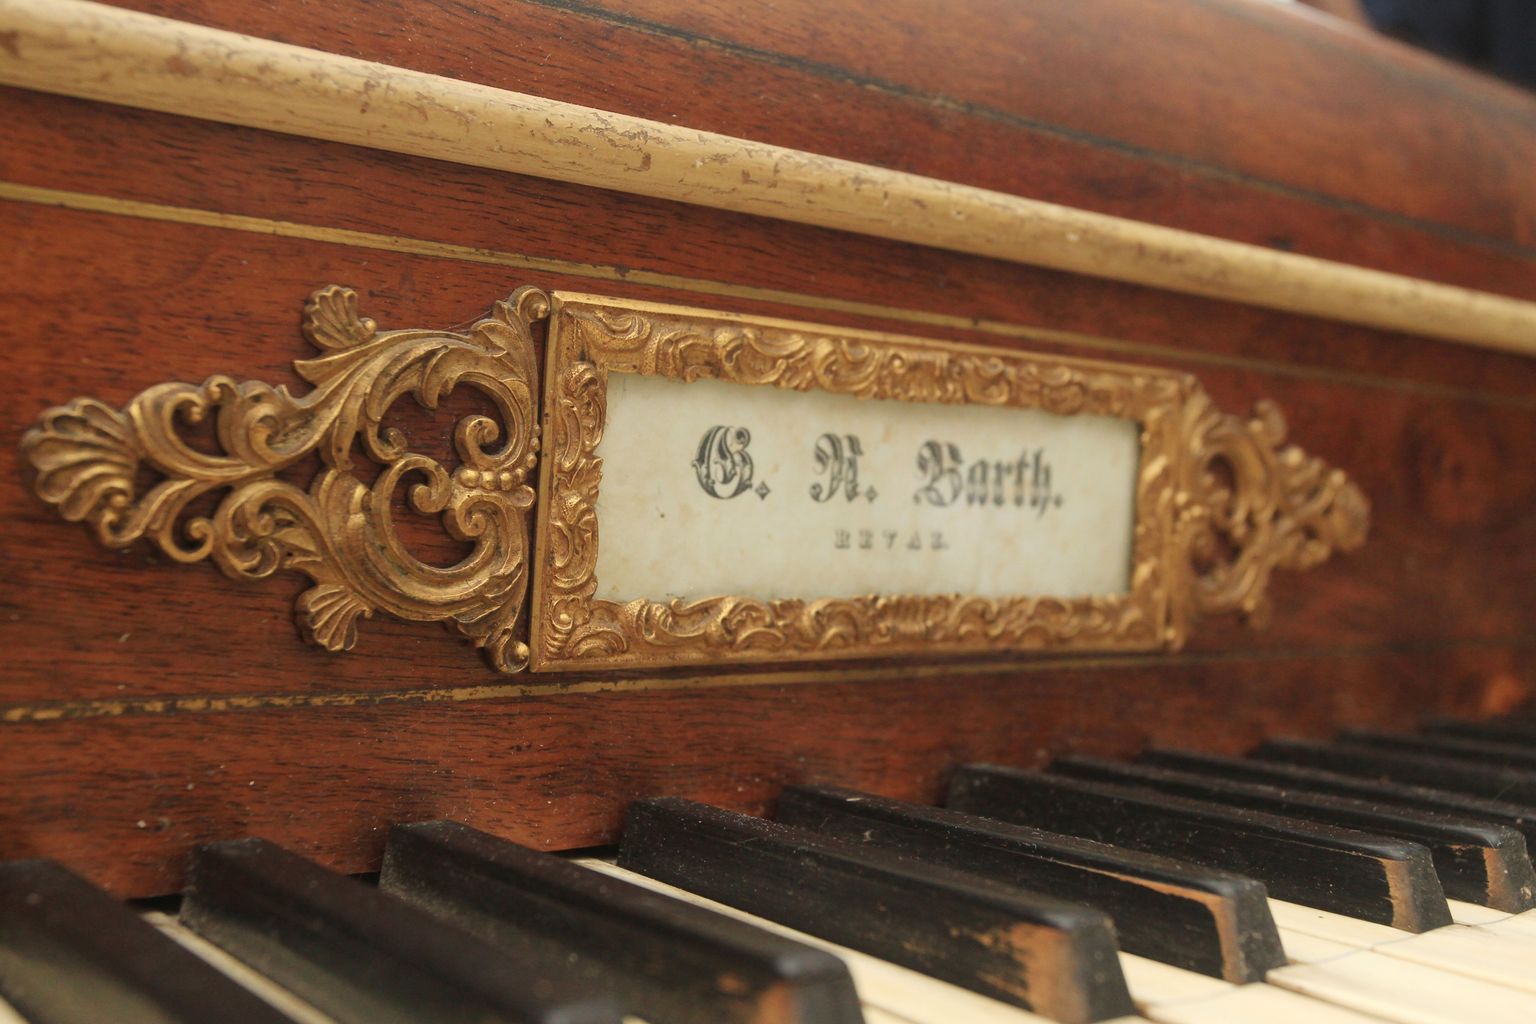 Suurte harulduste hulka kuulub Tallinnas 1840. aastatel ehitatud klaver Barth.